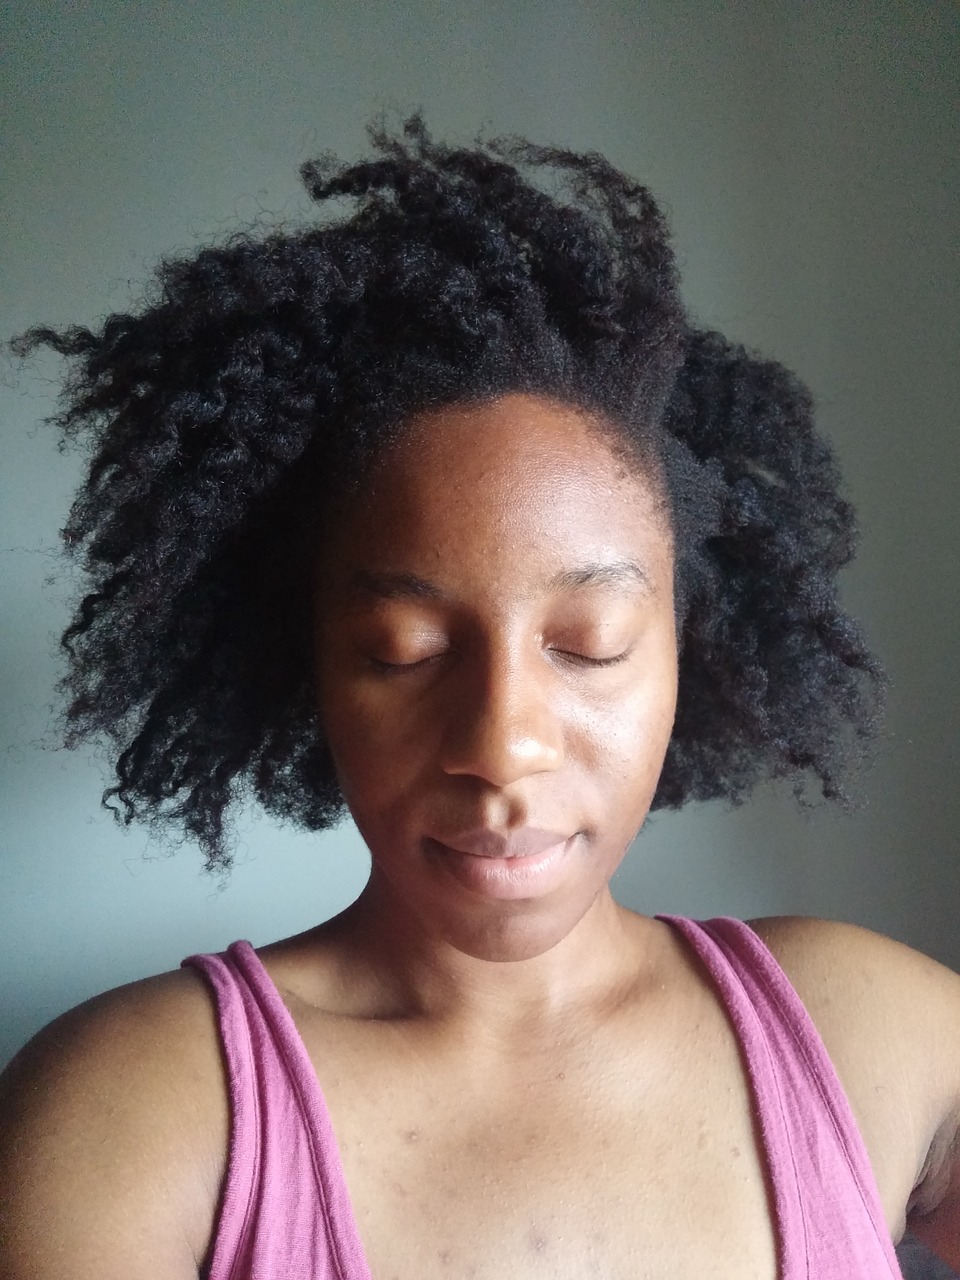 Download Free Photo Of Selfie African American Hair Portrait Black